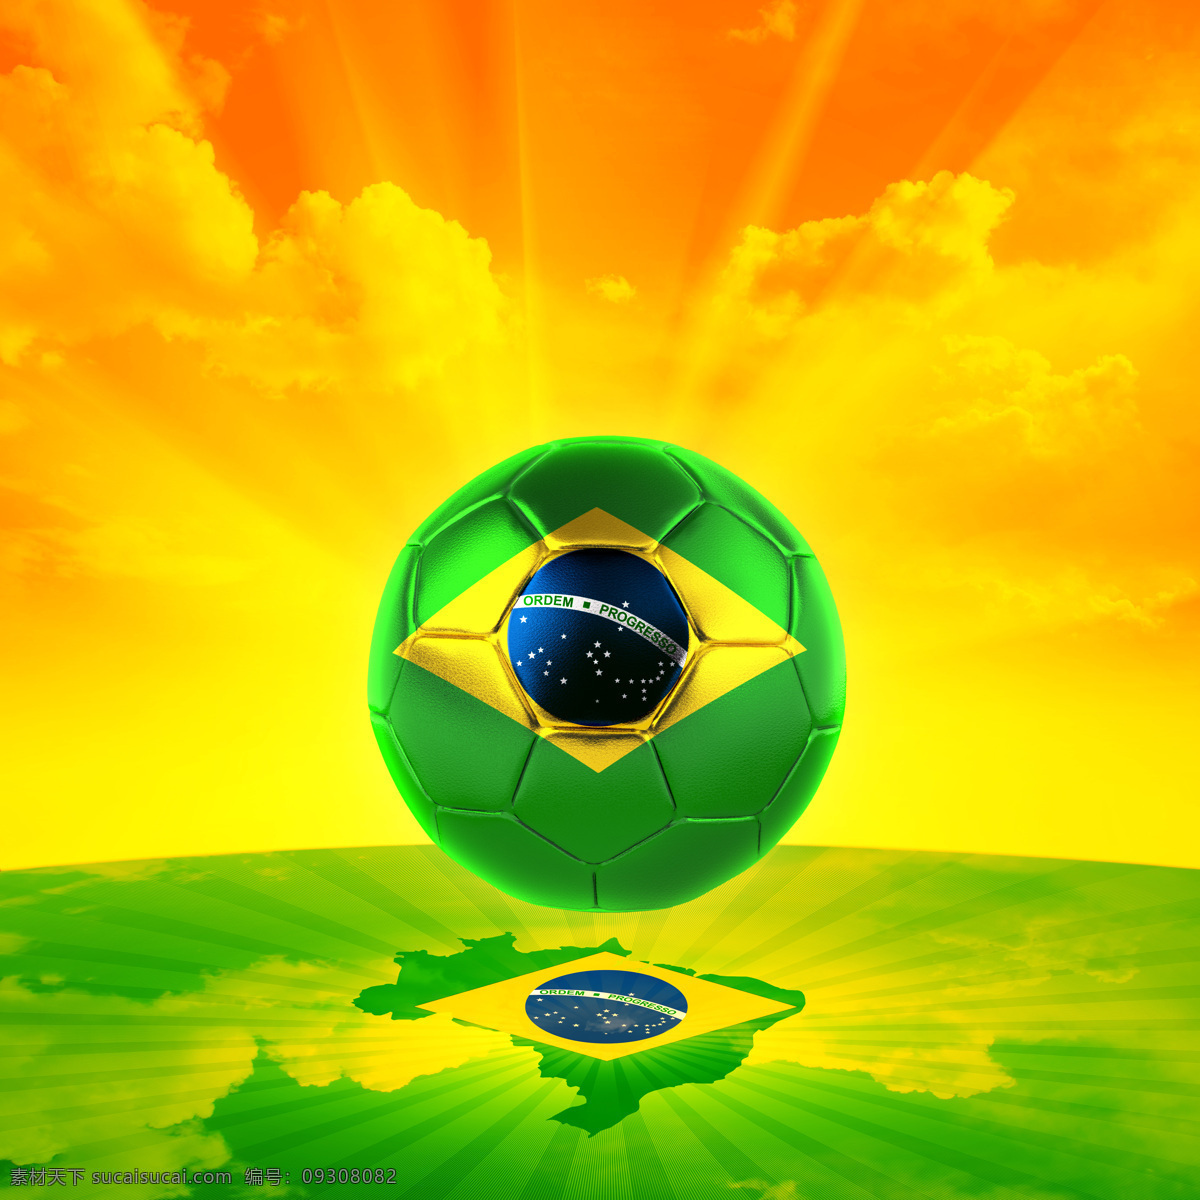 2014 世界杯 足球 巴西 巴西世界杯 设计素材 模板下载 足球世界杯 矢量图 日常生活